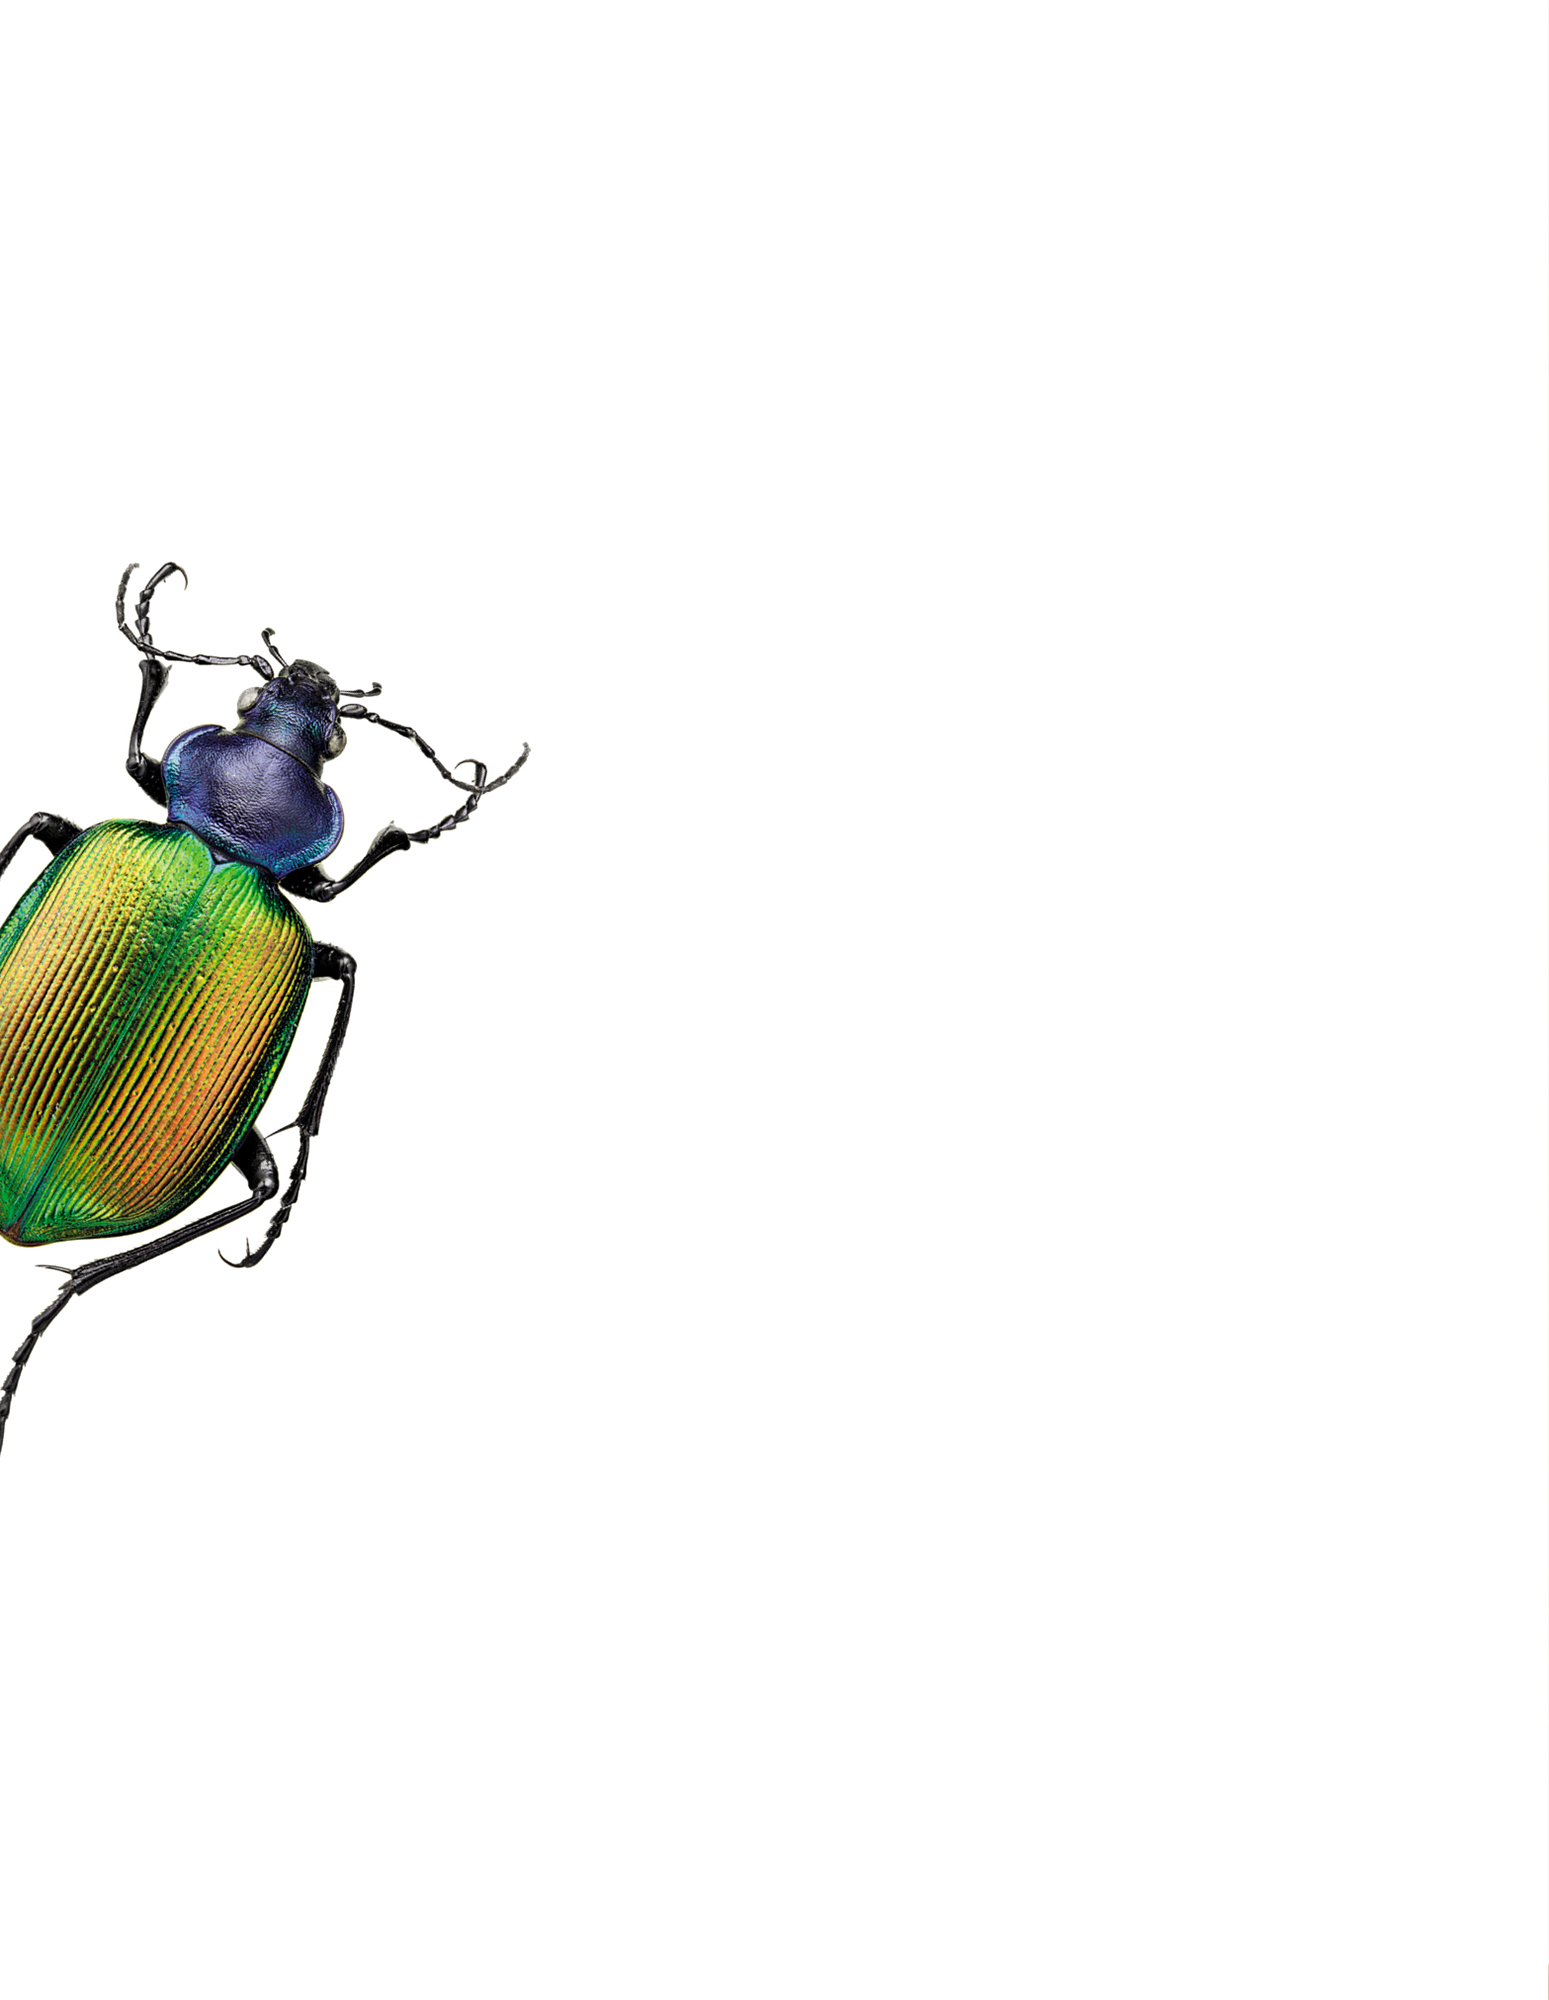 Käfer mit grünem Panzer